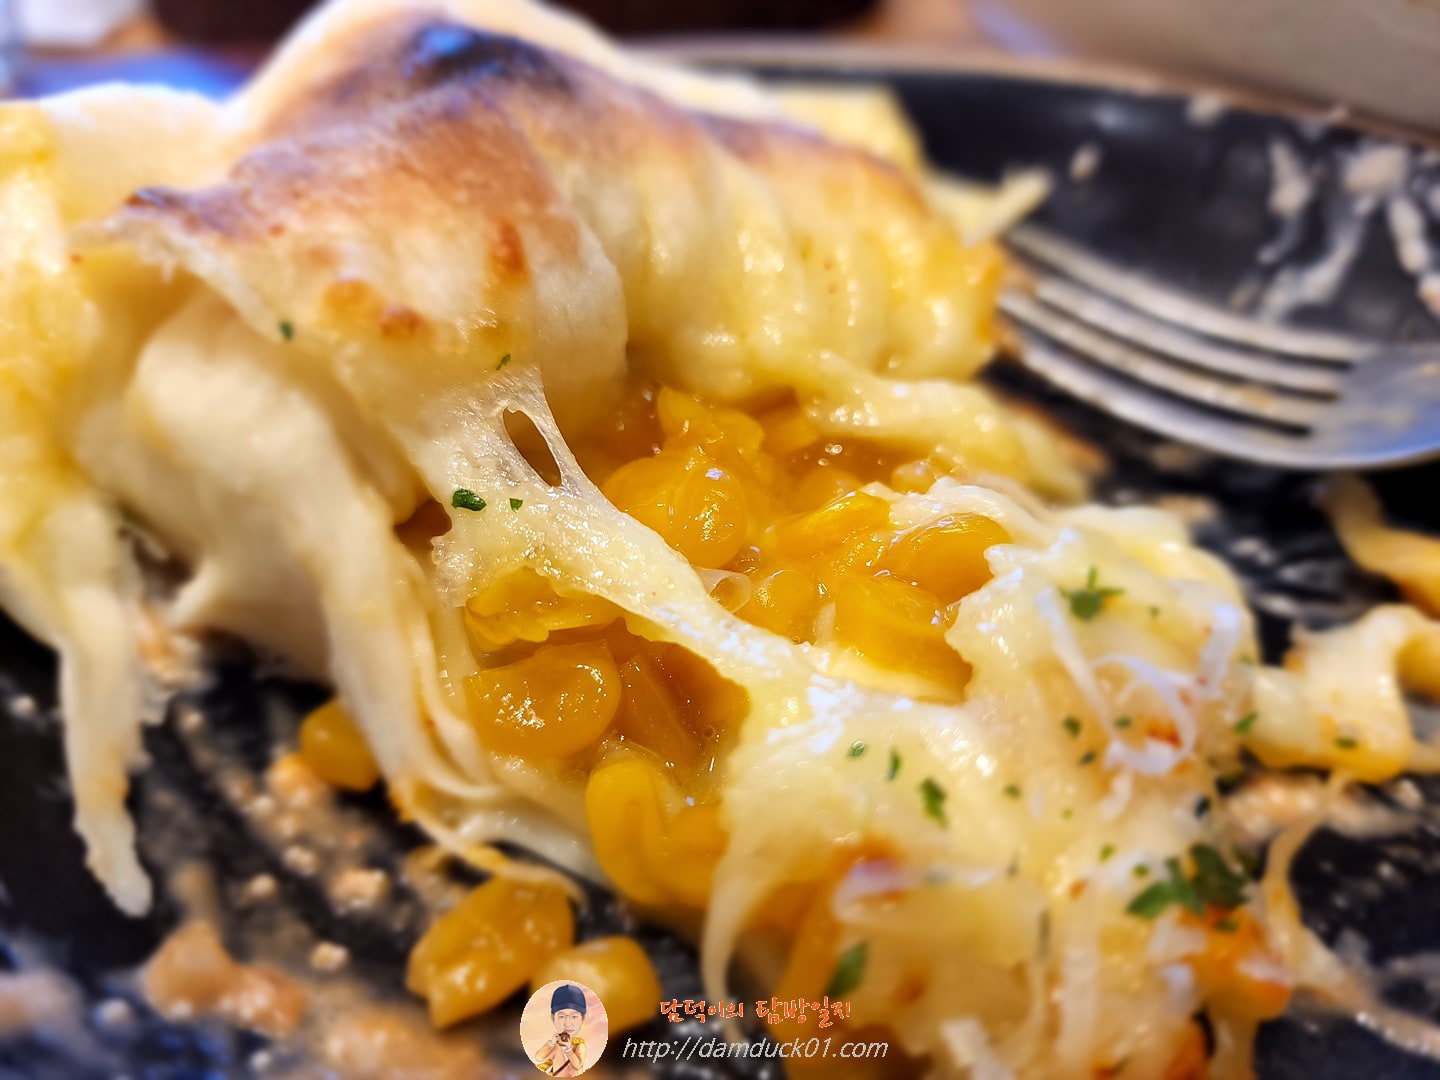 초당 옥수수 치즈 듬뿍 피자